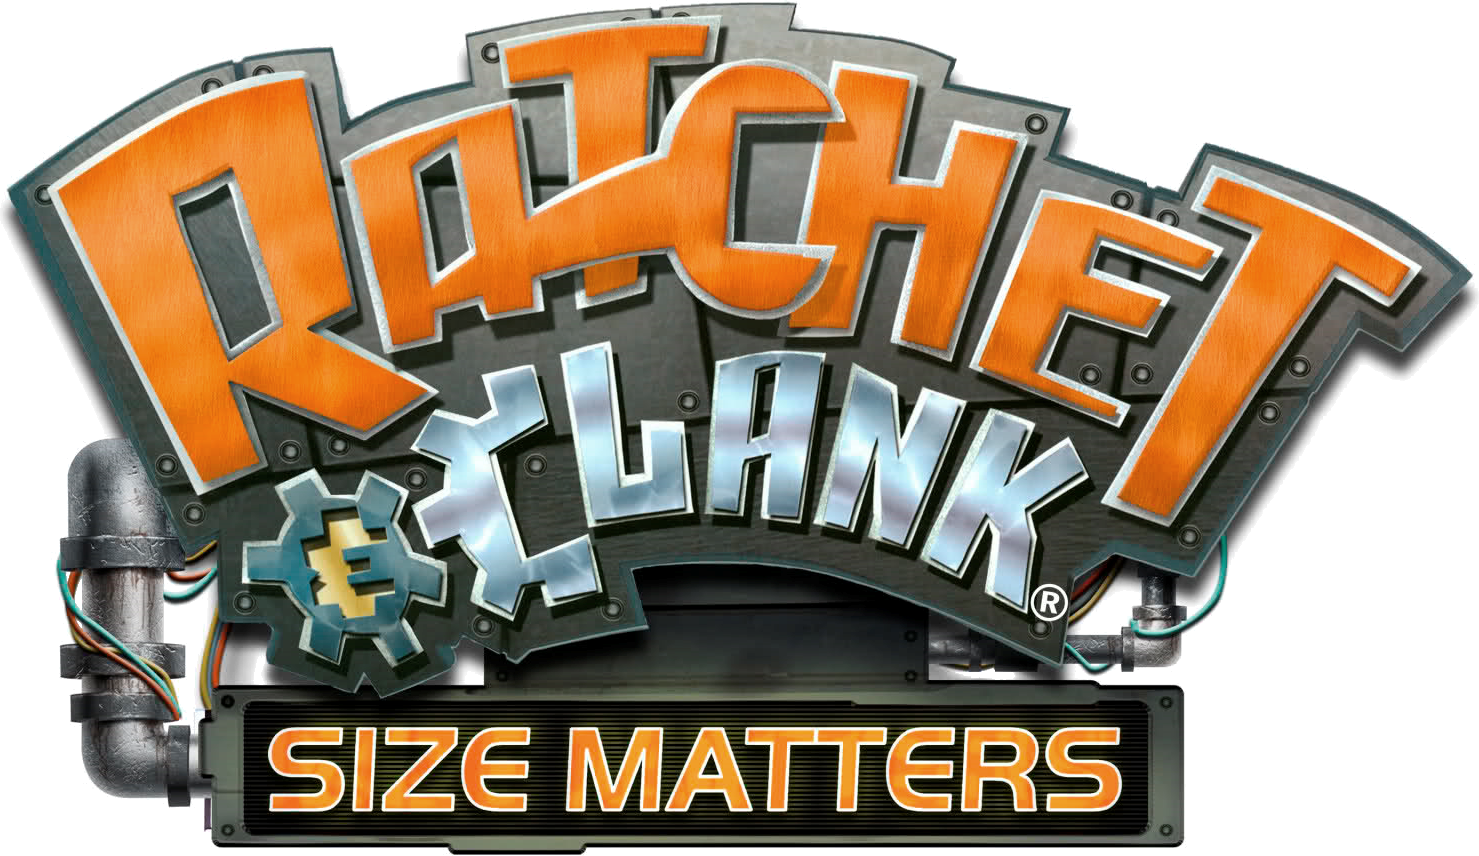 Ratchet & Clank: Size Matters (PlayStation Portable) · RetroAchievements